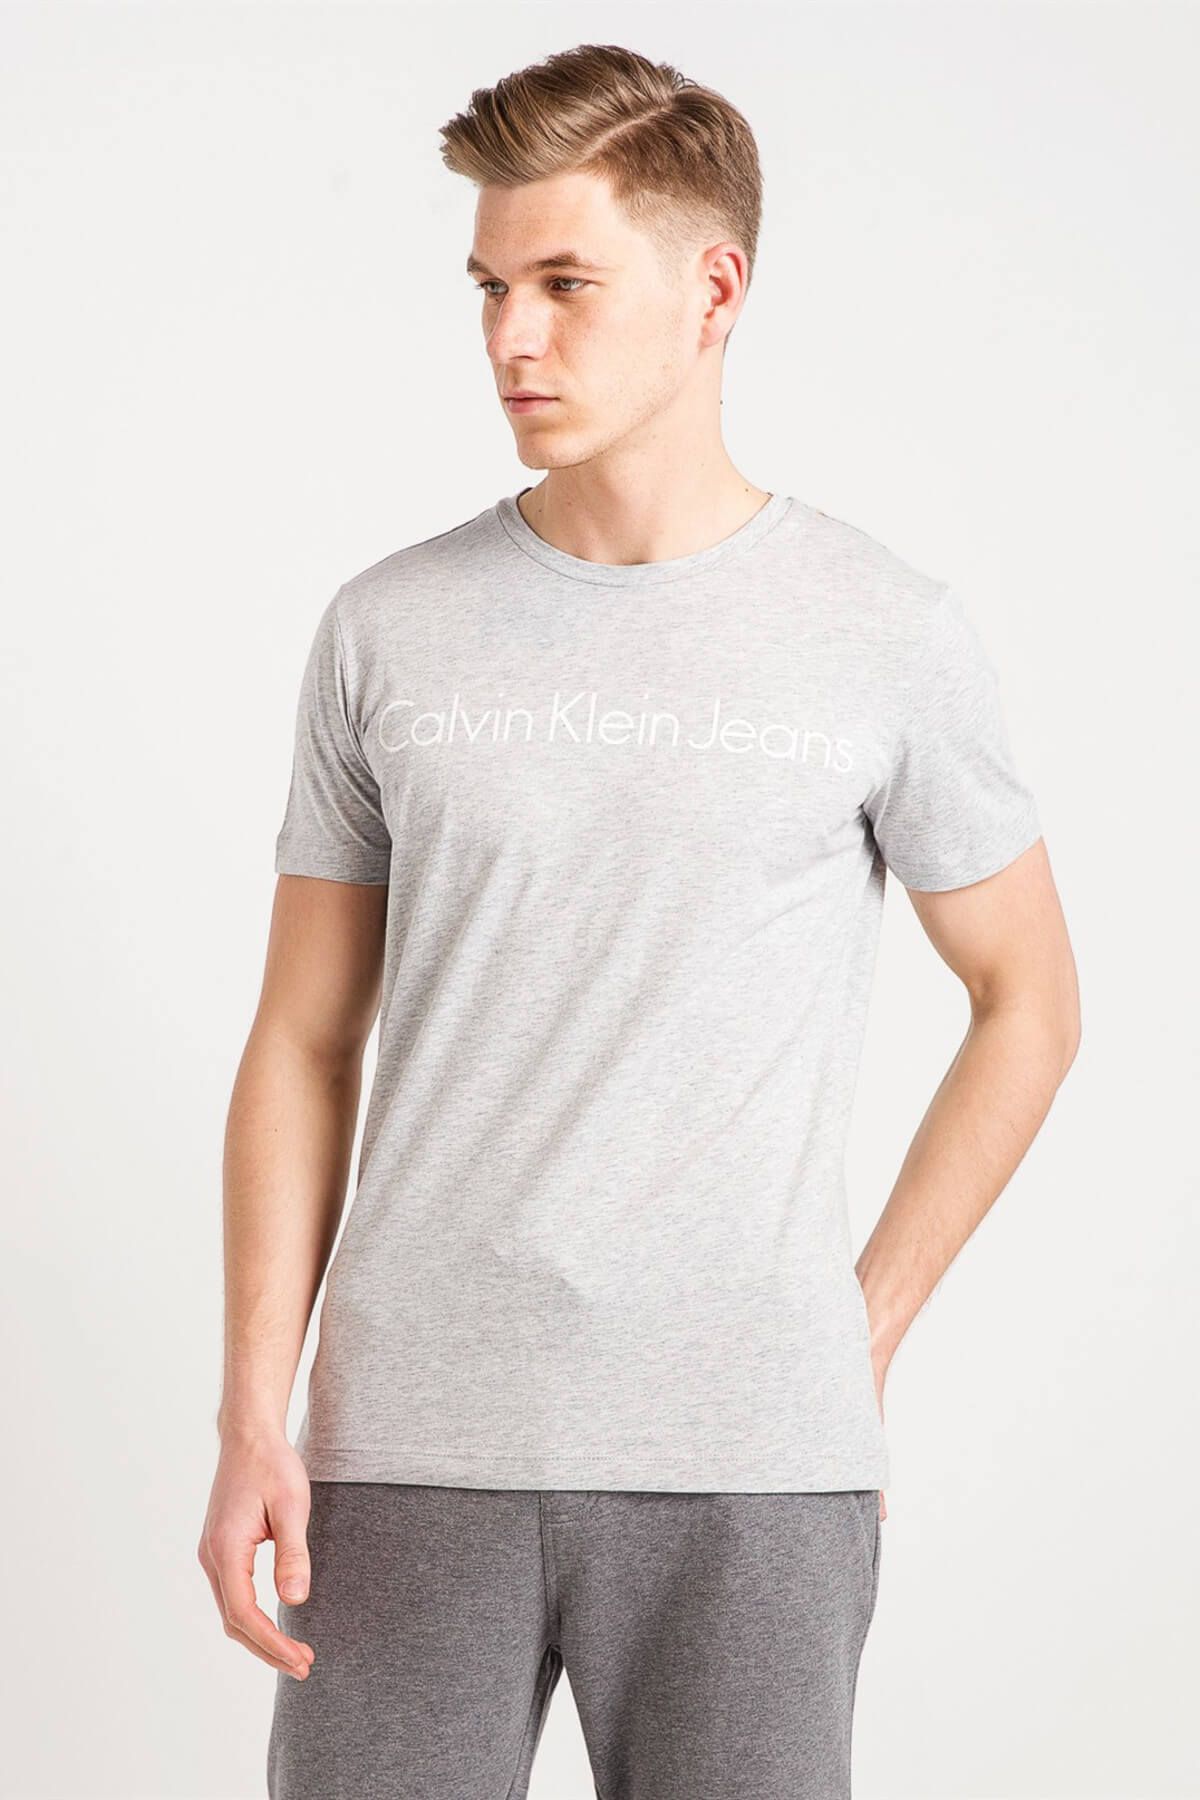 Calvin Klein Erkek Gri T-Shirt 18Nj30J306458